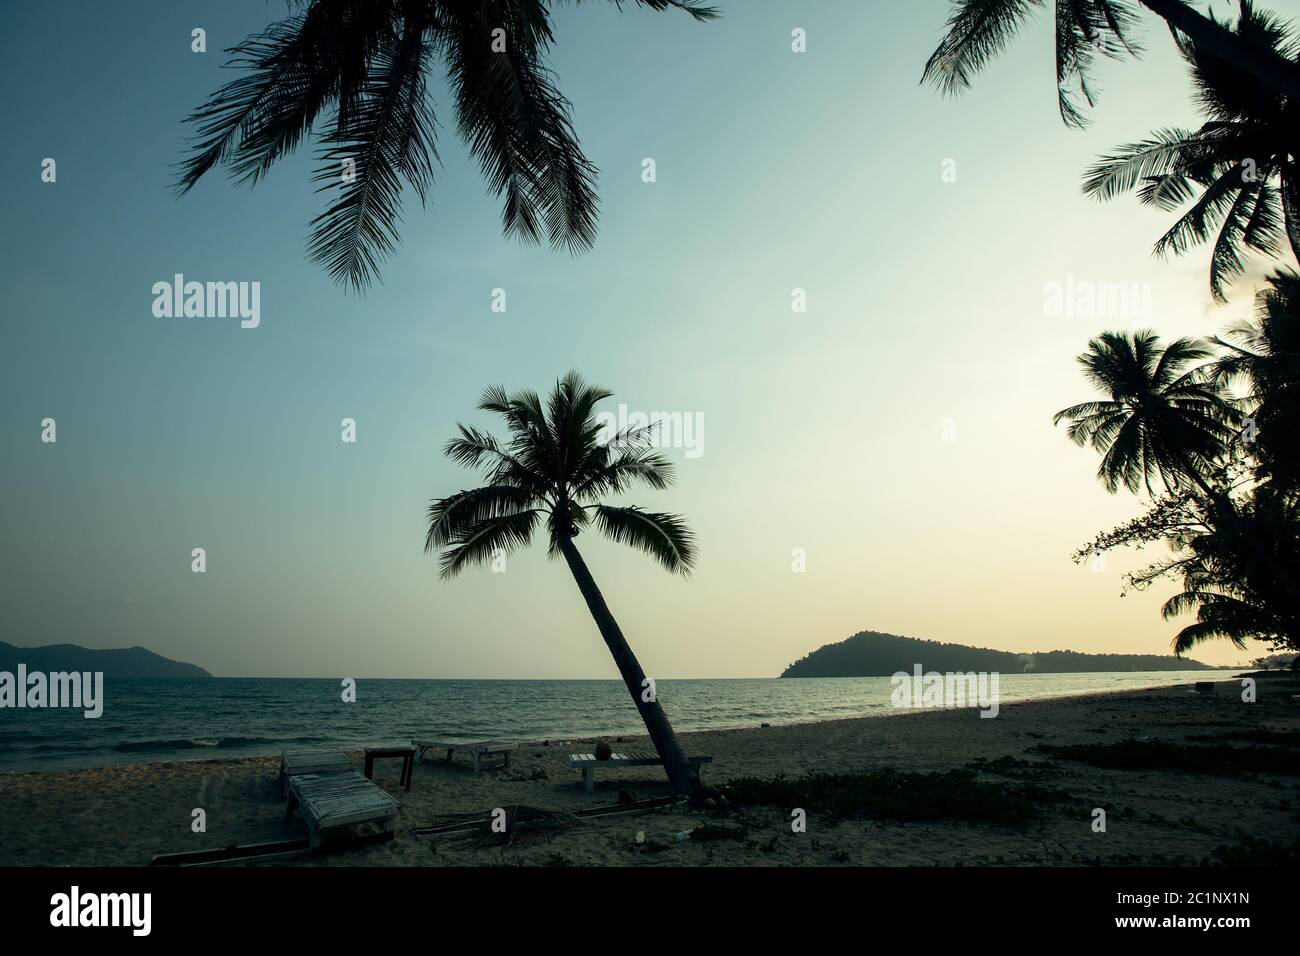 Silhouettes de palmiers sur une plage tropicale au beau crépuscule. Banque D'Images